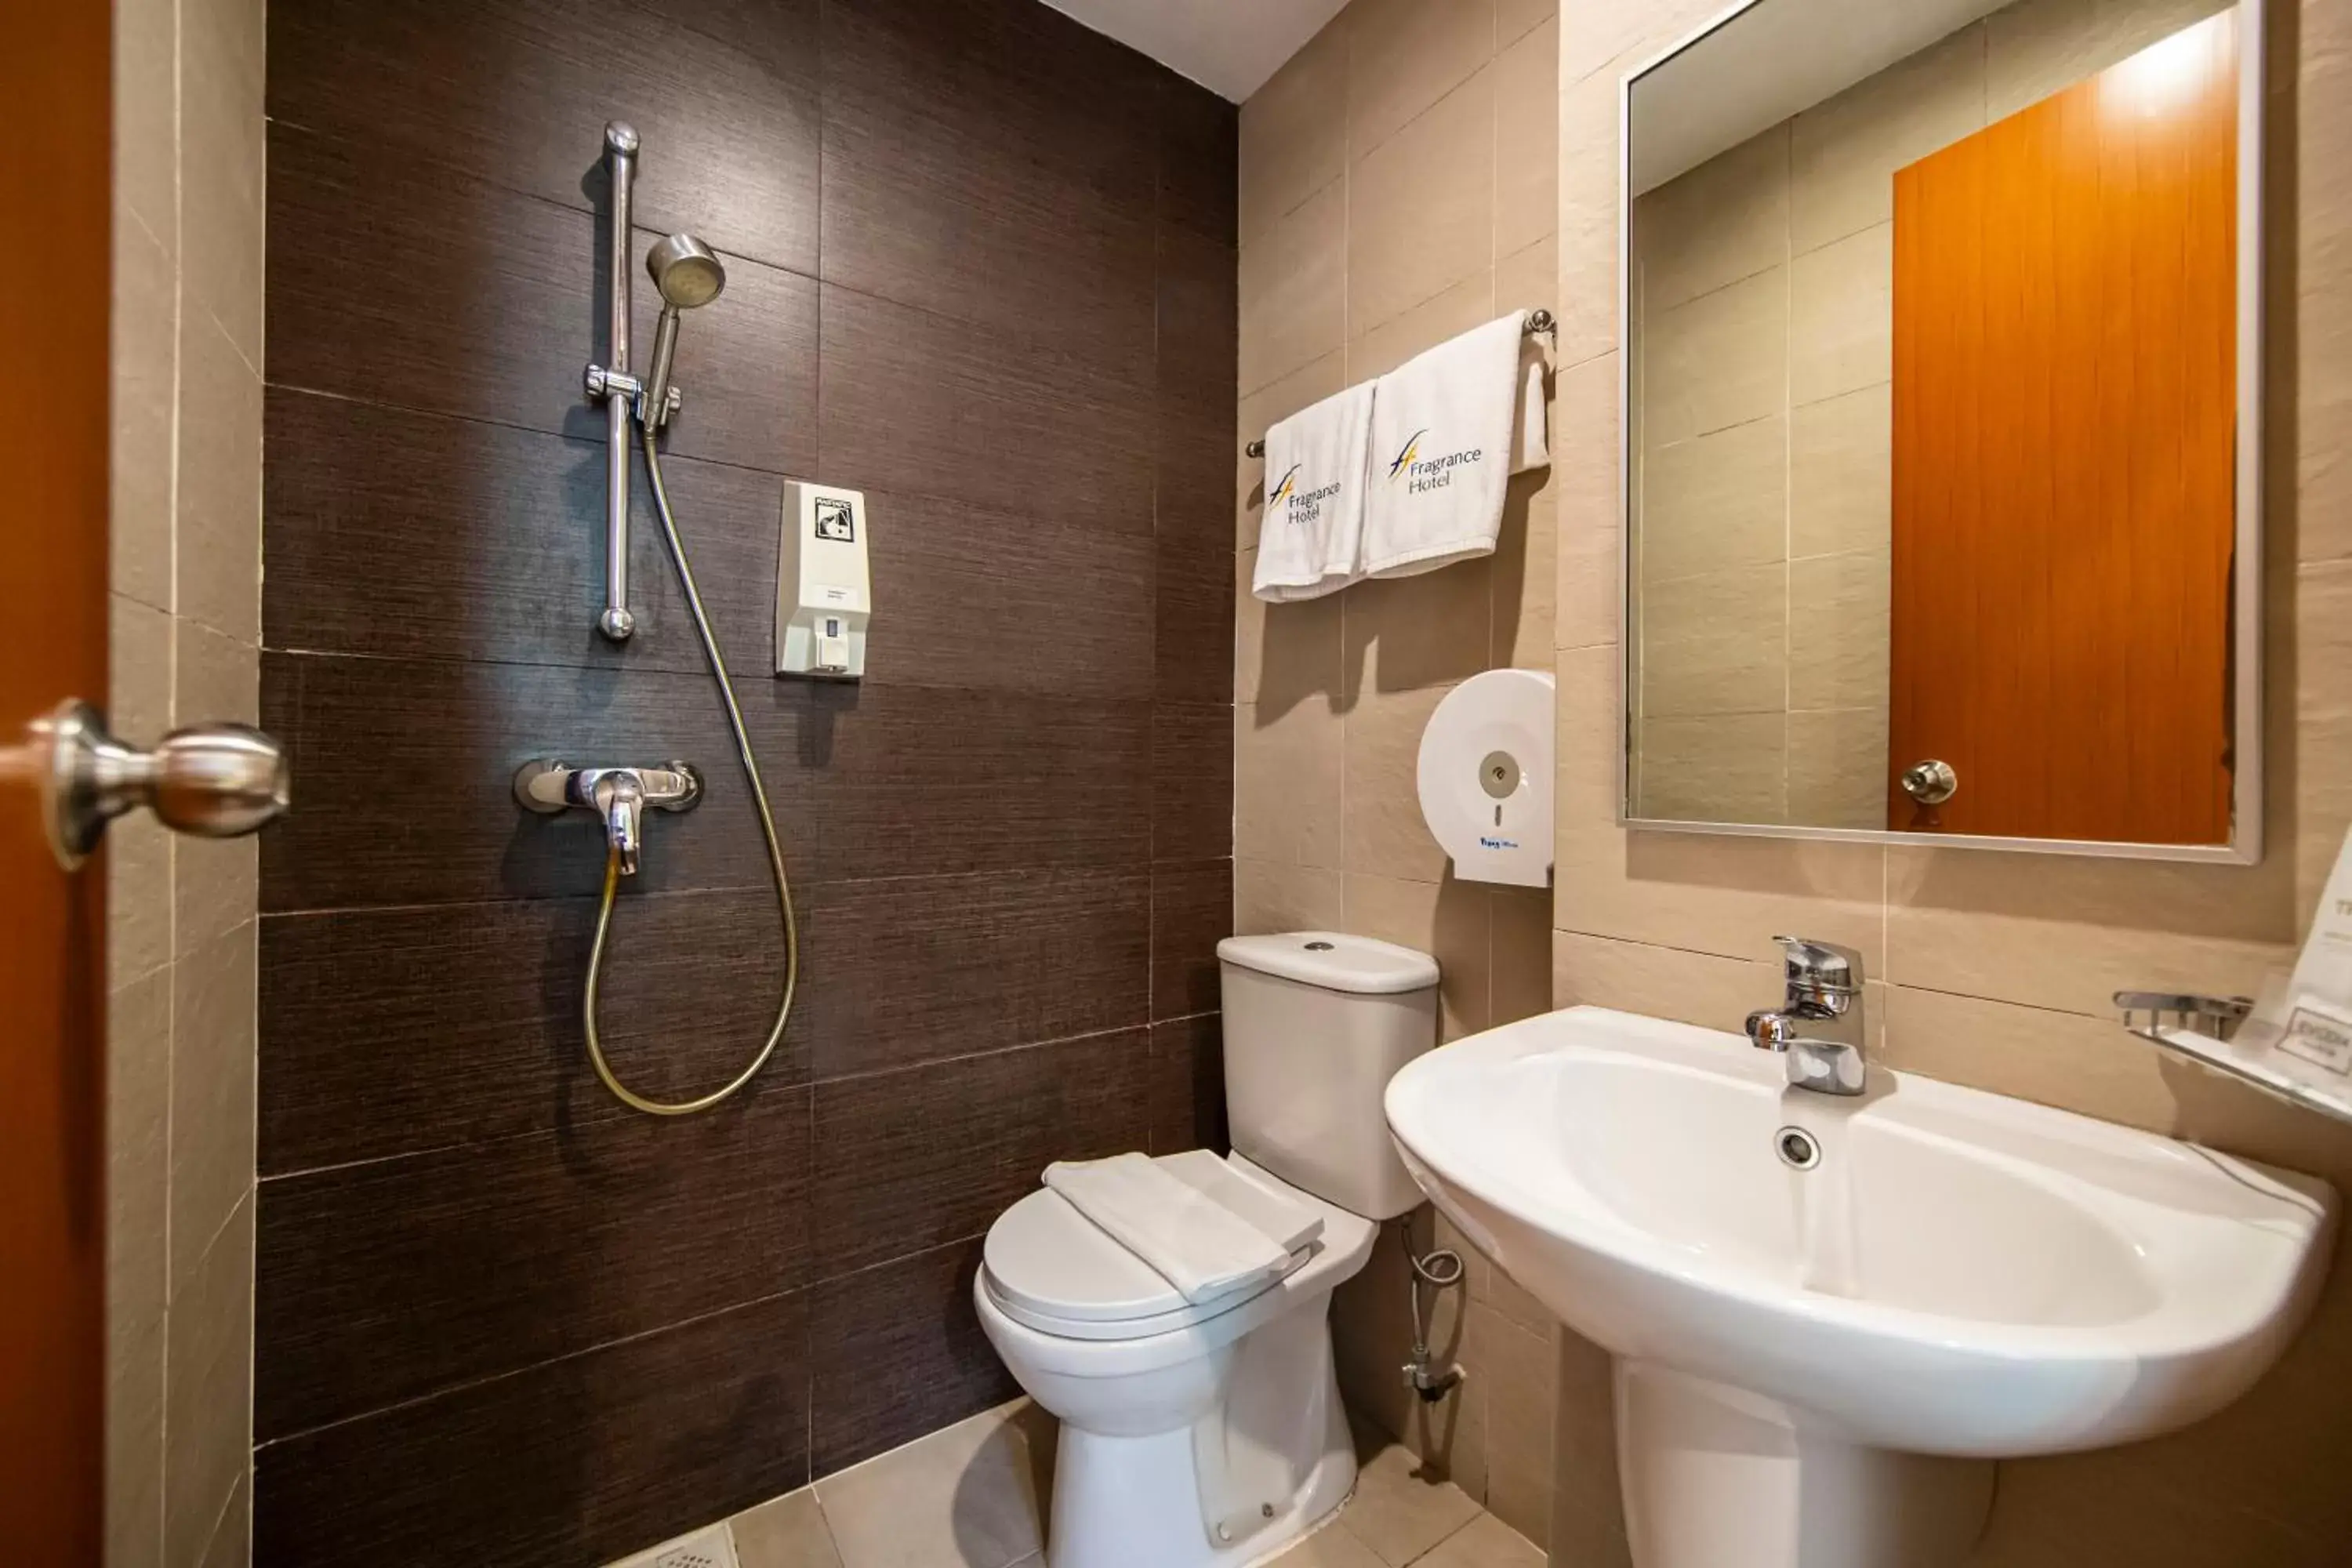 Toilet, Bathroom in Fragrance Hotel - Oasis